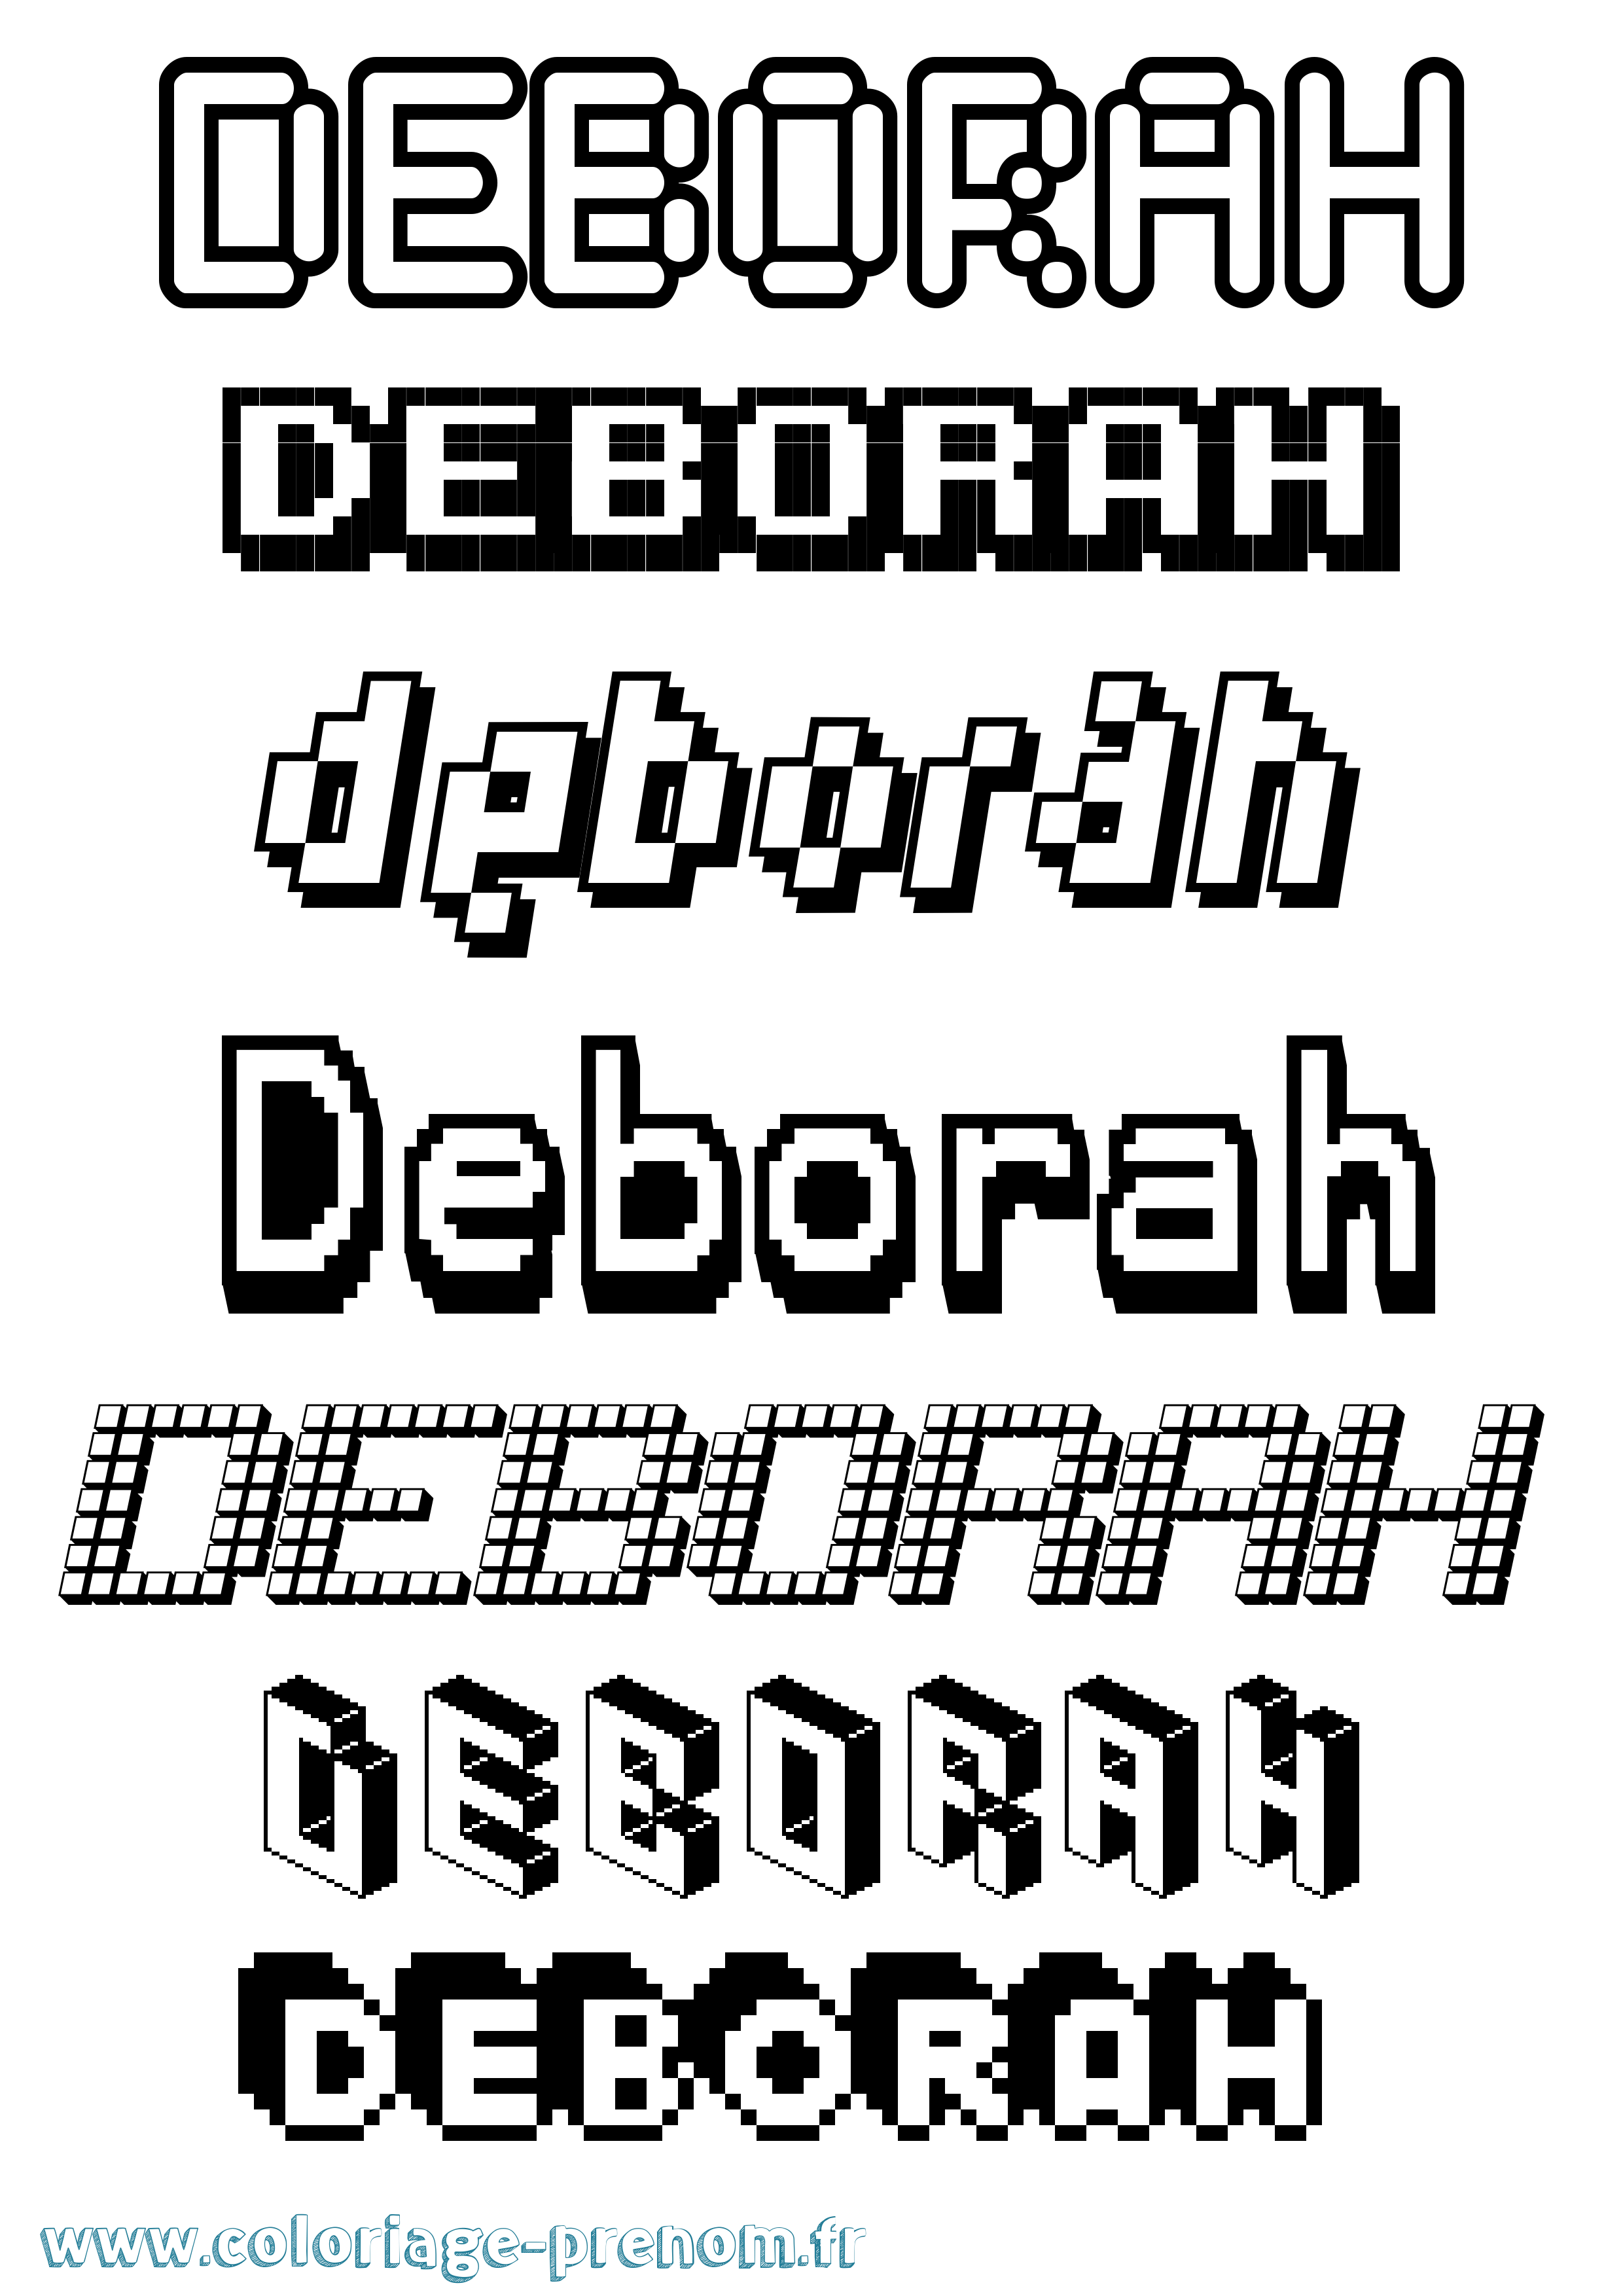 Coloriage prénom Deborah